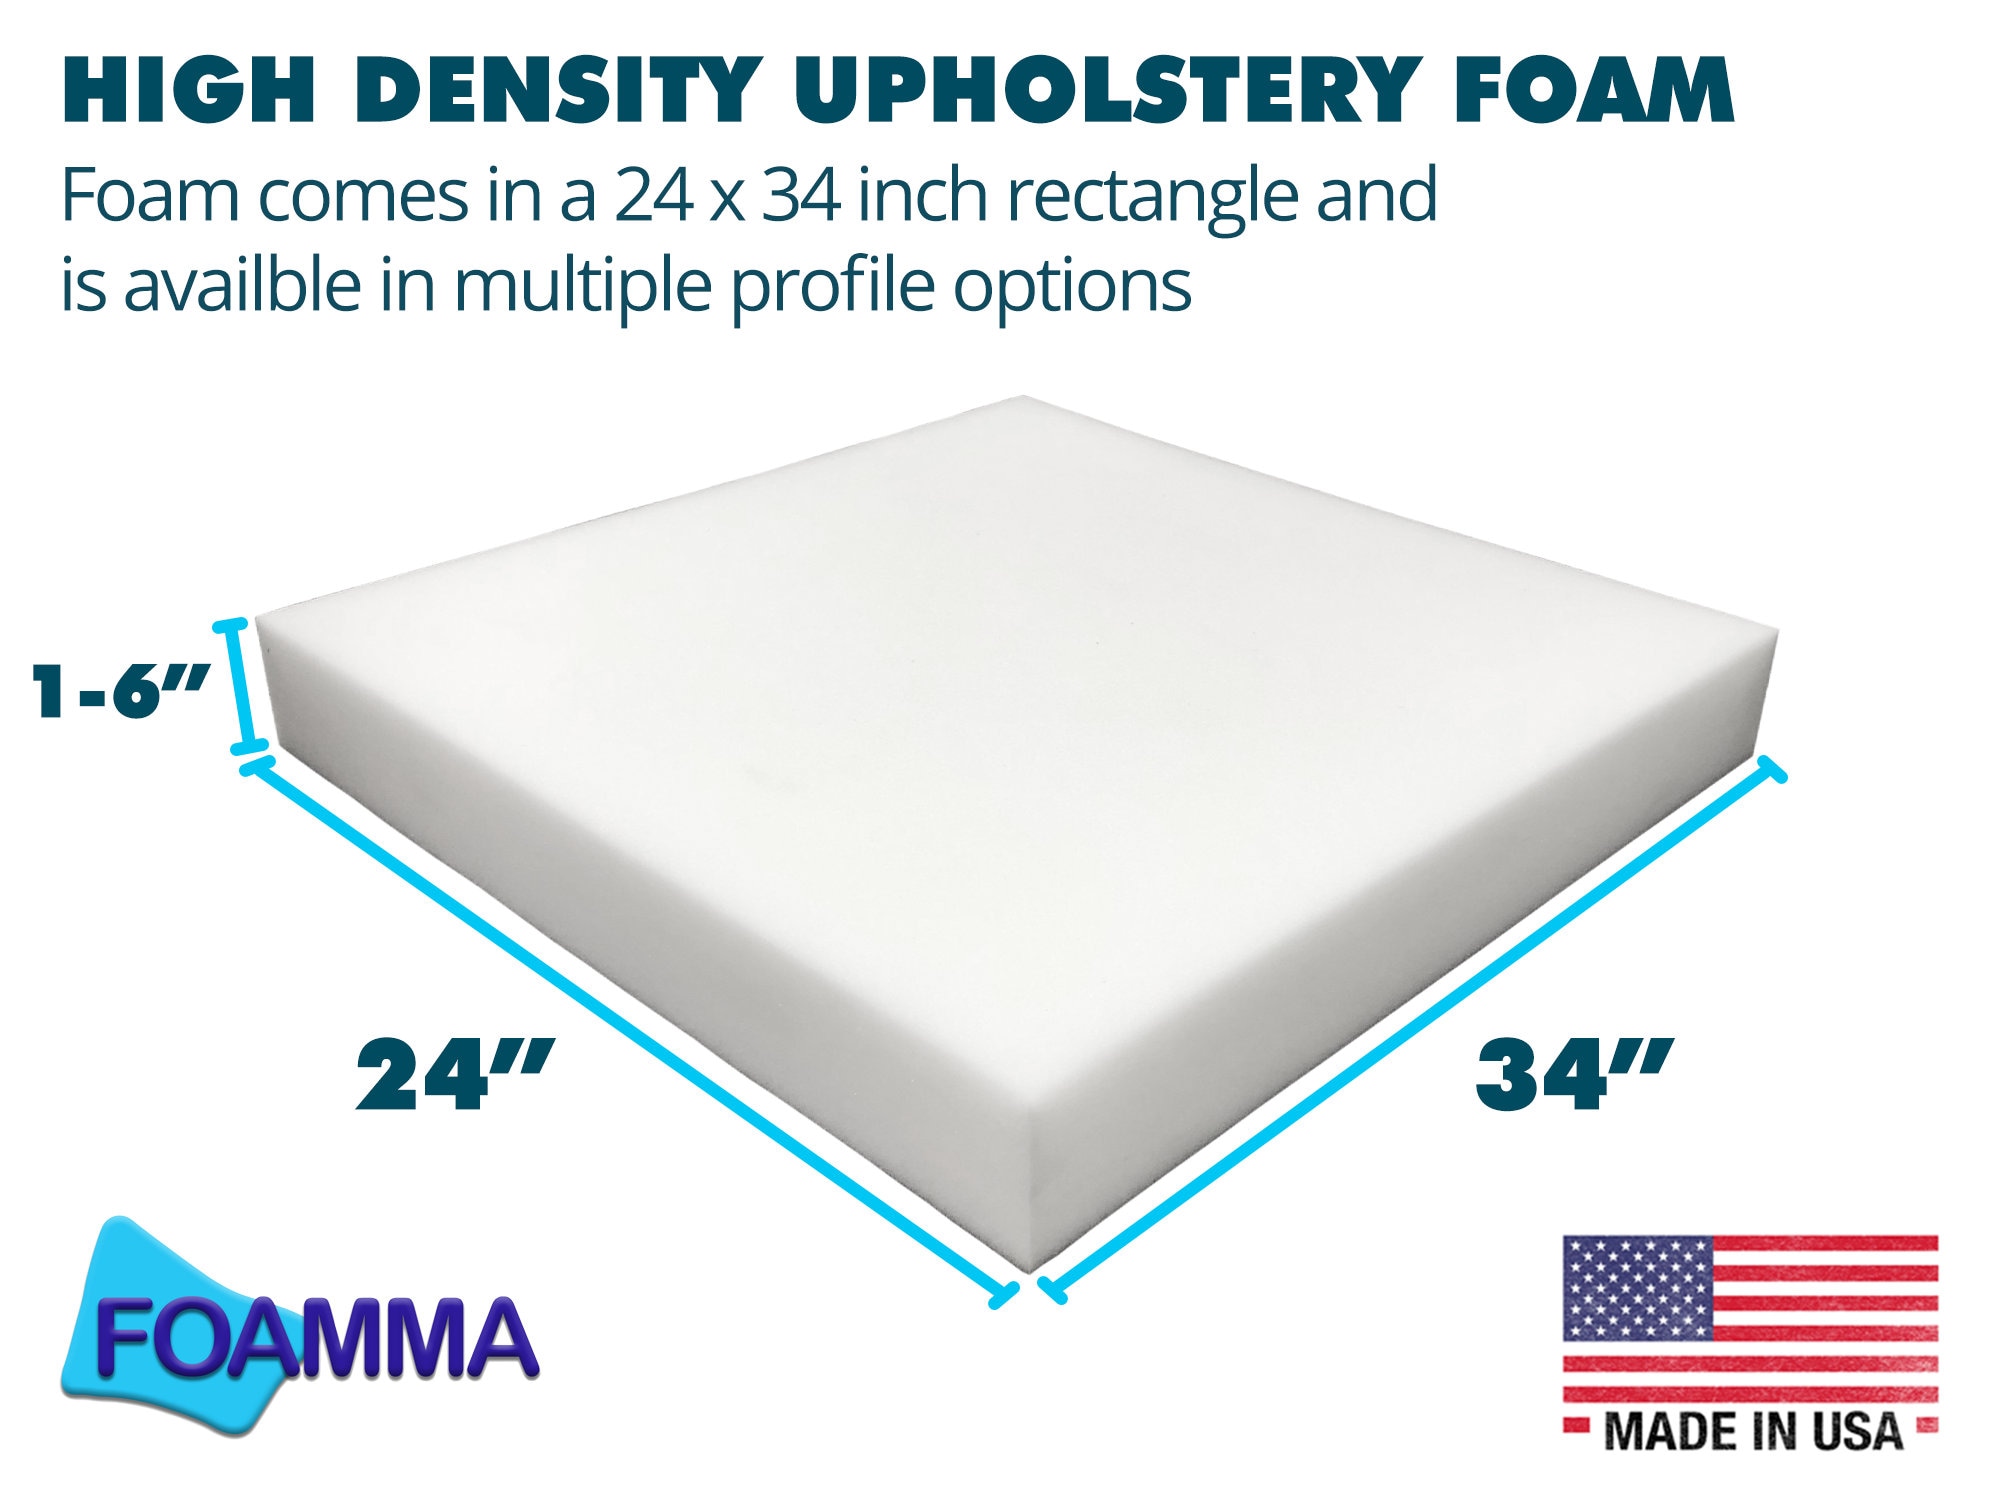 Upholstery Foam 6 Inch 